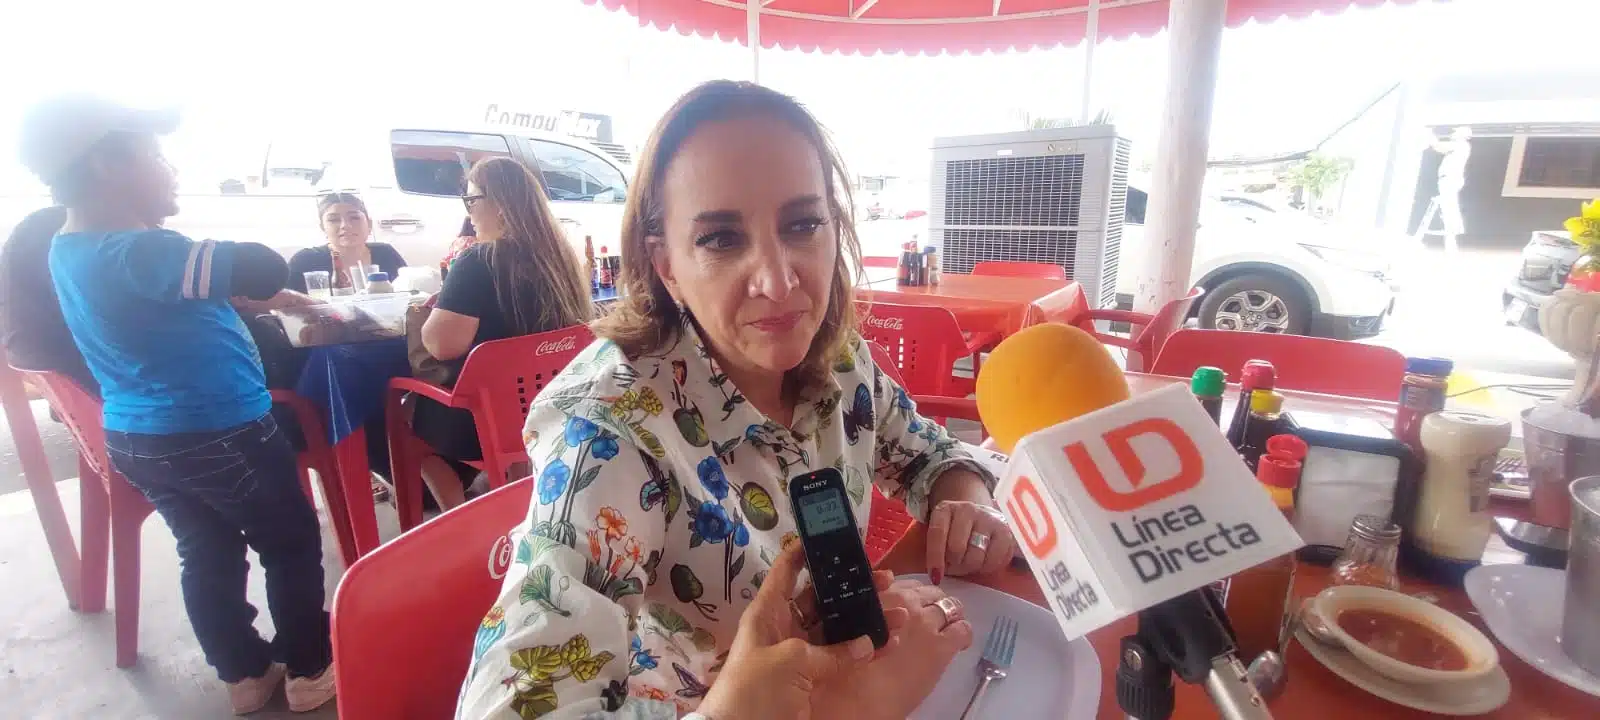 La senadora del PRI Claudia Ruiz Massieu fue entrevistada por Línea Directa en un conocido restaurante de Los Mochis.